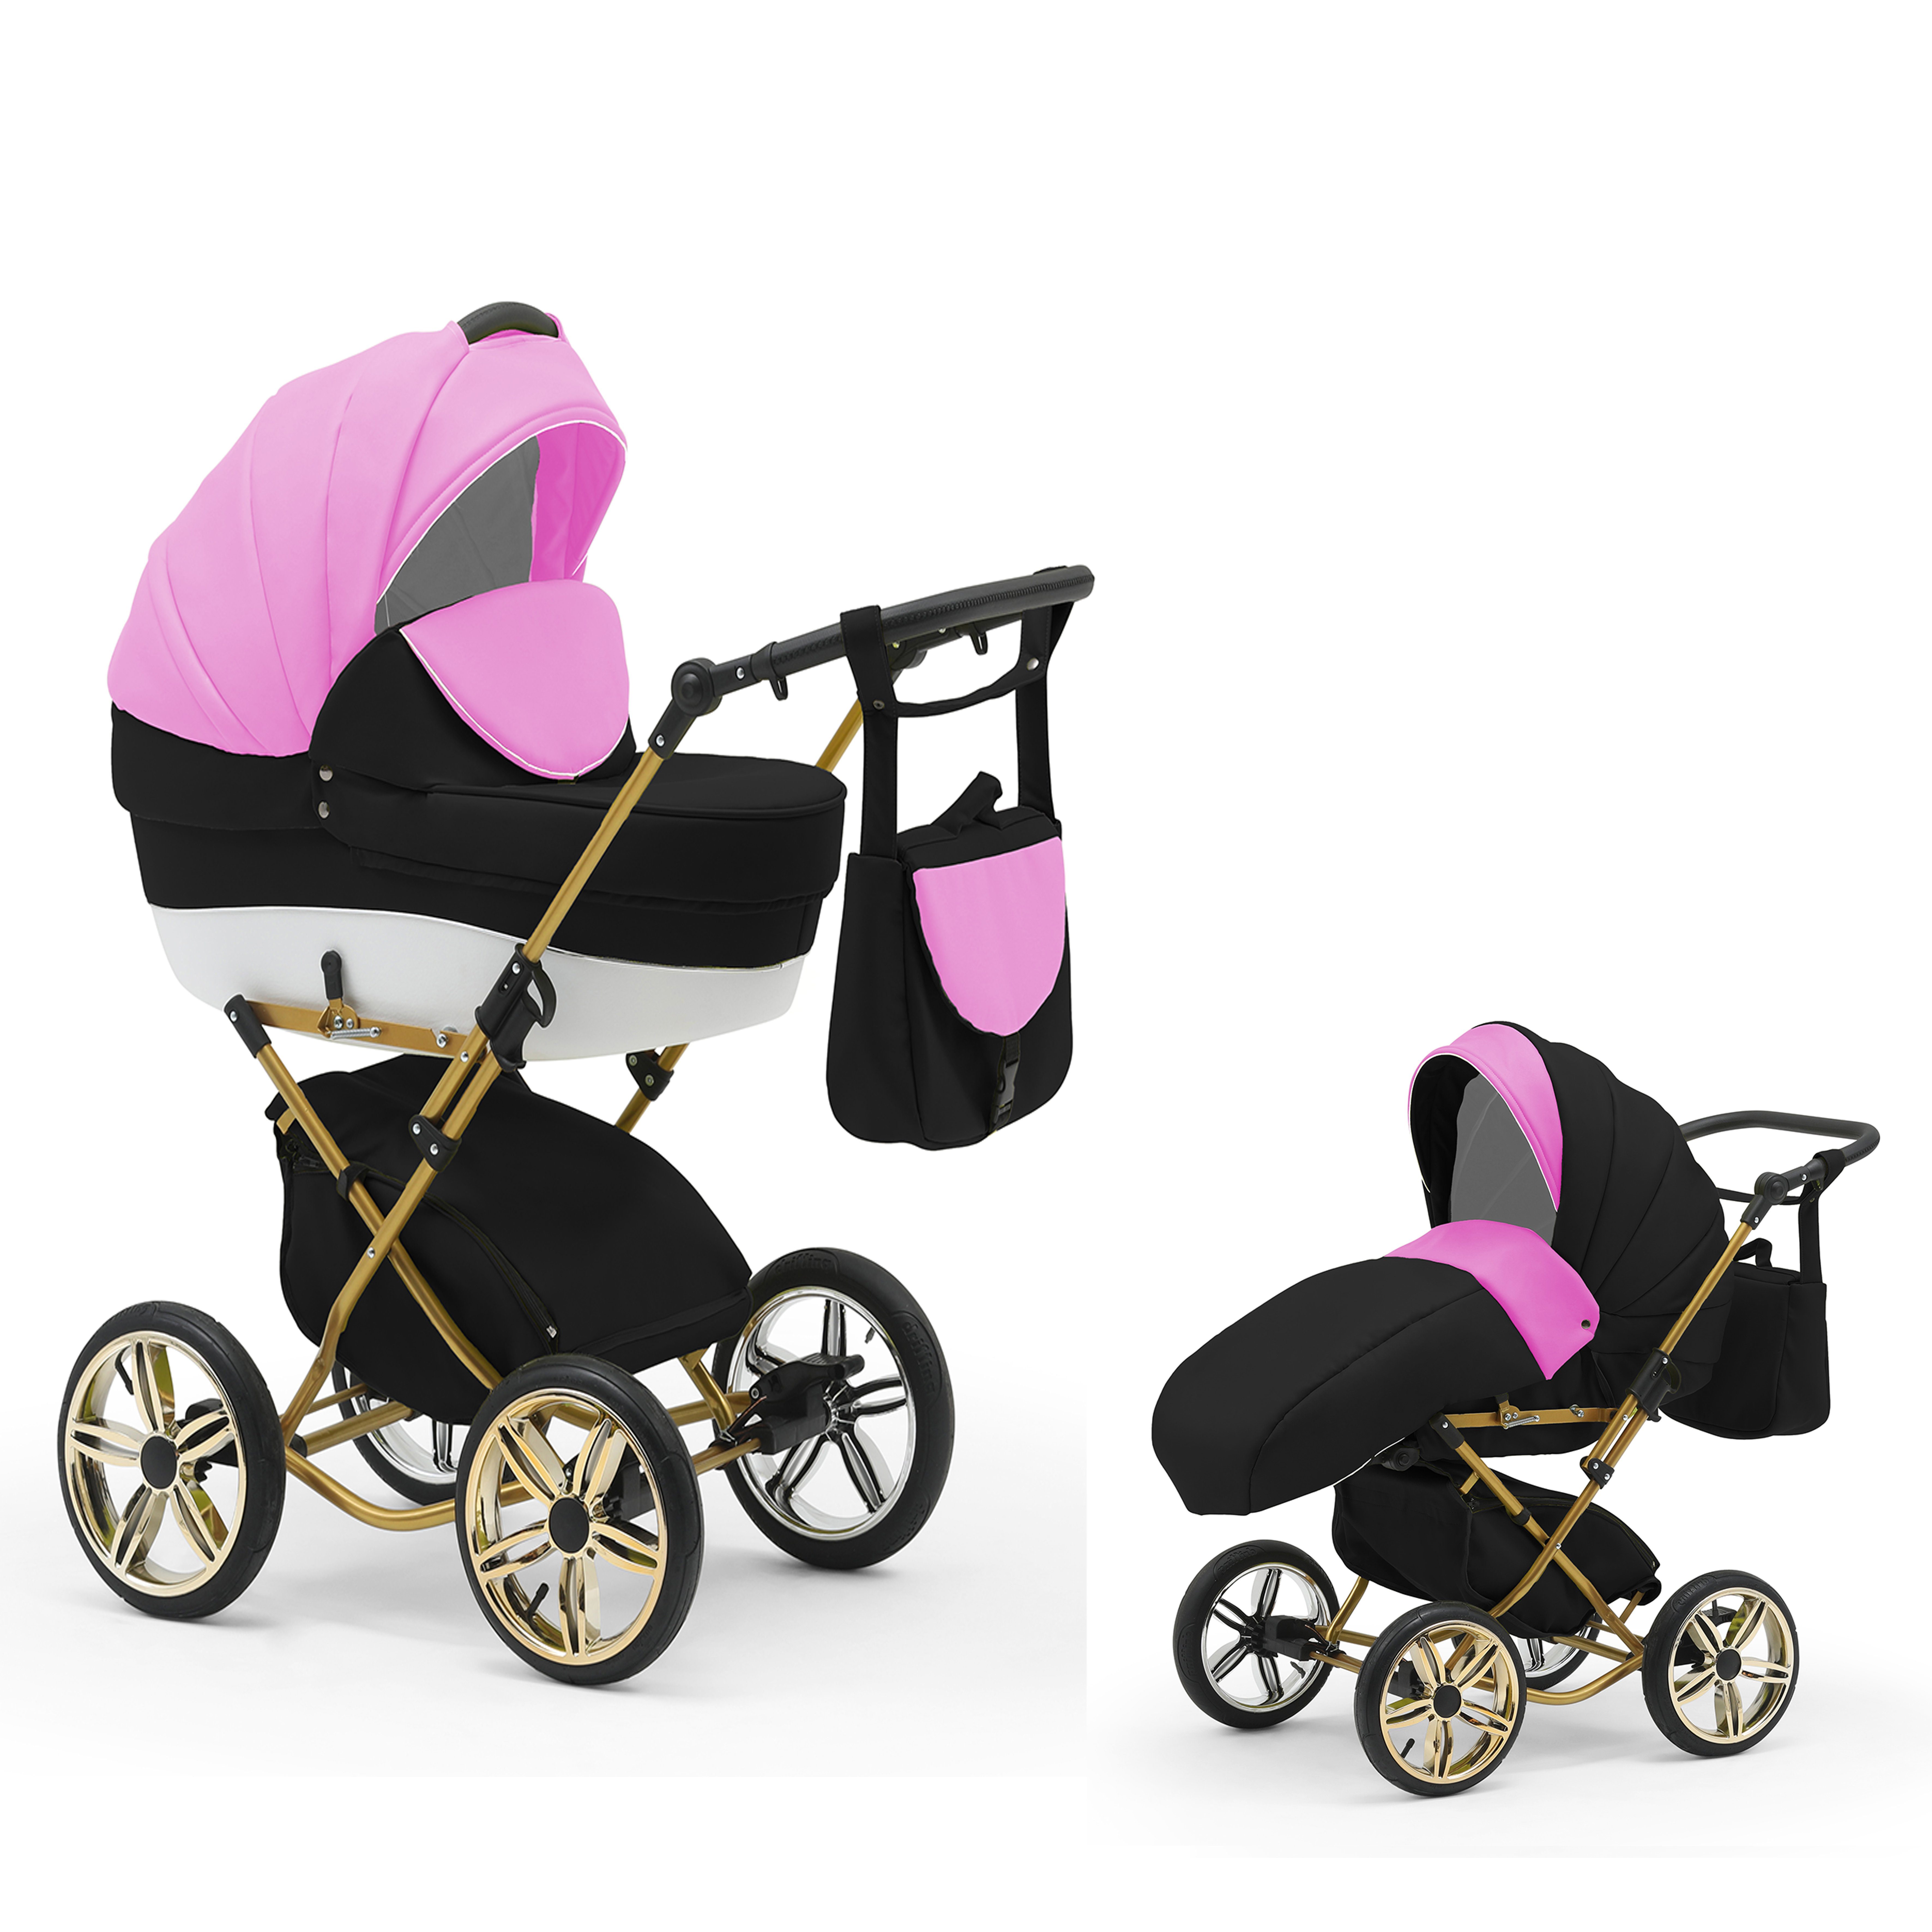 babies-on-wheels Kombi-Kinderwagen Sorento 2 in 1 - 11 Teile - von Geburt bis 4 Jahre in 30 Designs Pink-Weiß-Schwarz | Kombikinderwagen